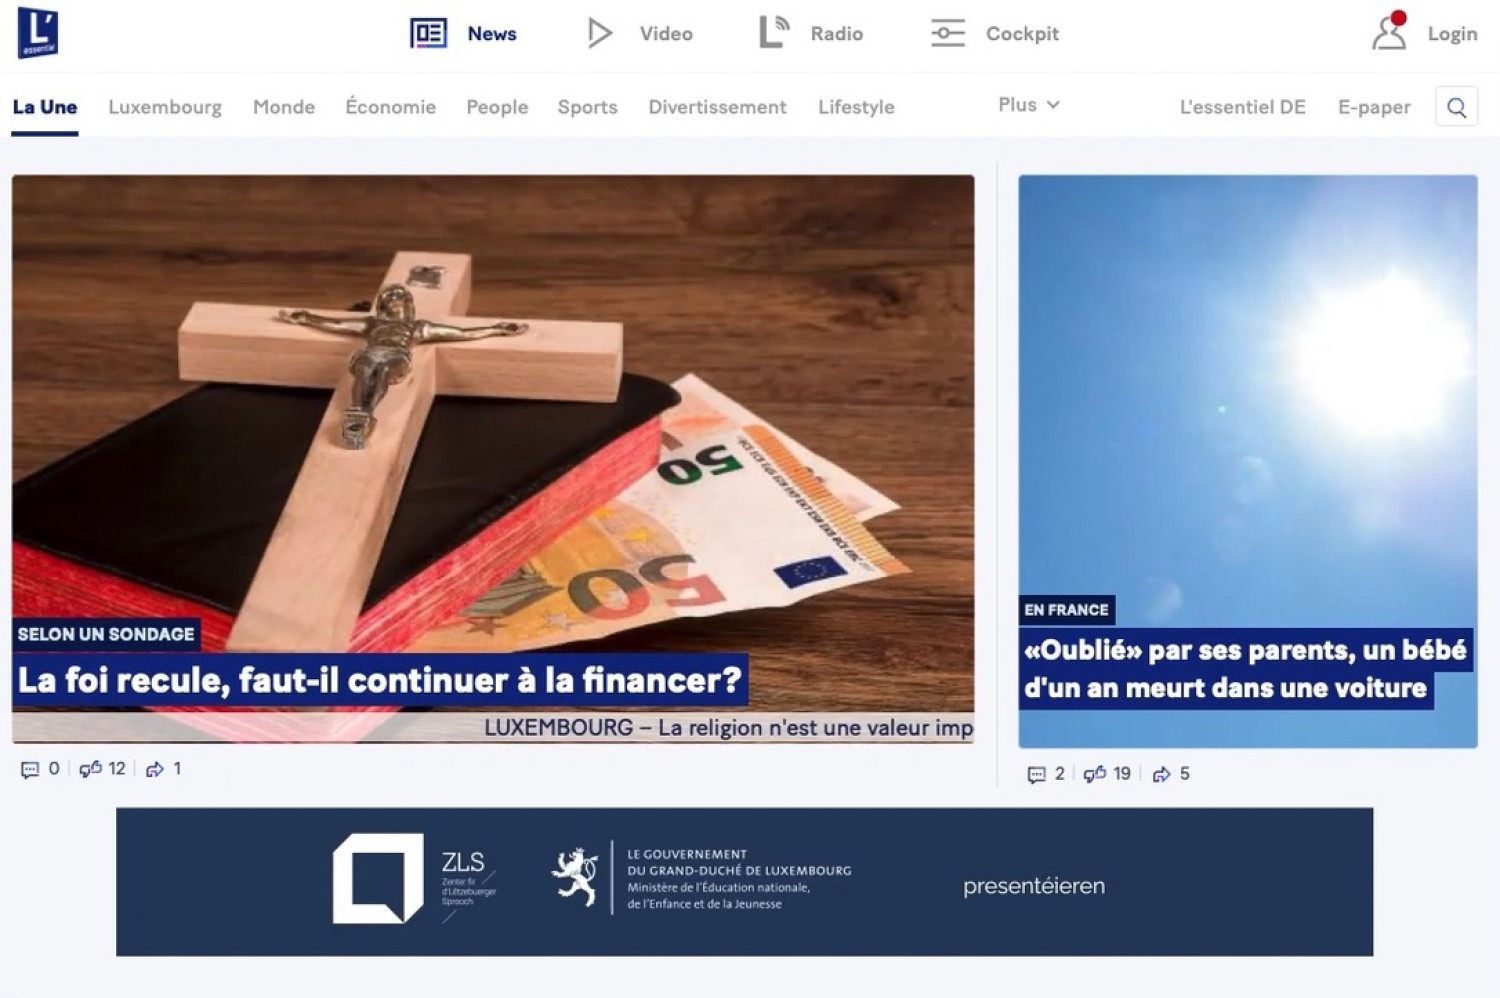 LOD - Lëtzebuerger Online Dictionnaire - Campagne nationale de publicité